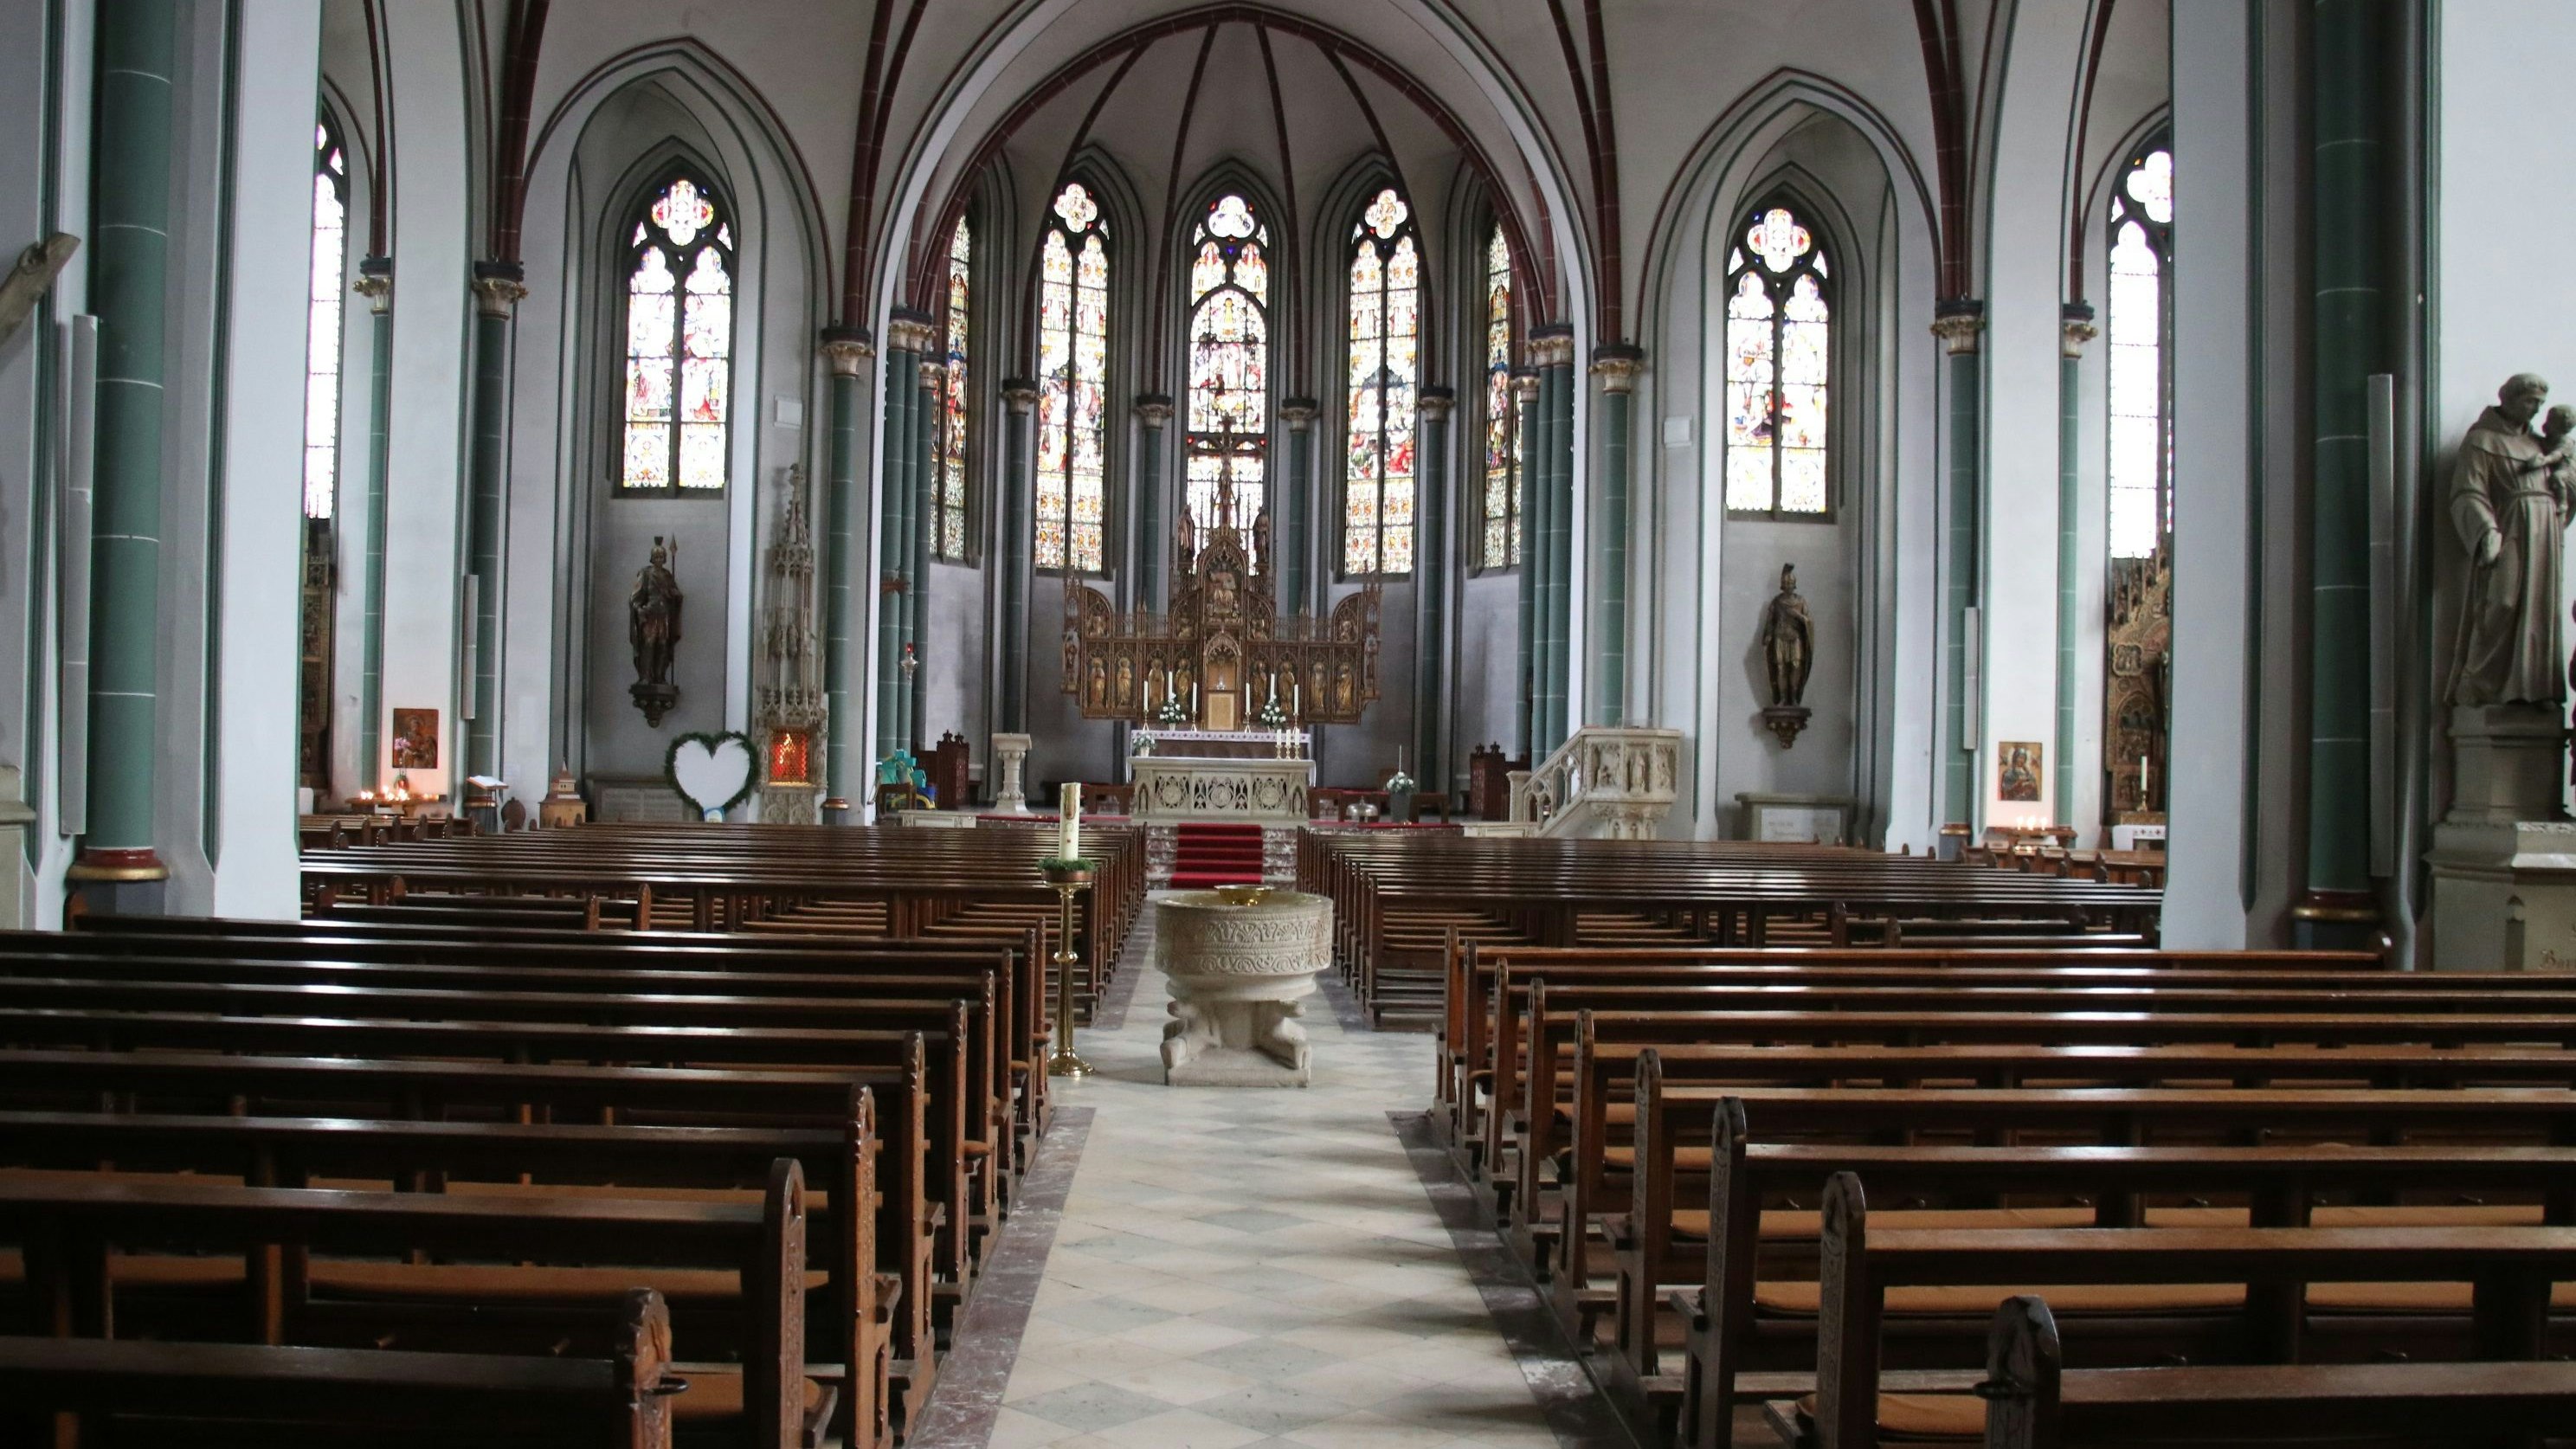 Deutlich reduziert: Die geplante Innensanierung der St.-Viktor-Kirche umfasst vor allem das Anstreichen der Wände. Foto: Lammert